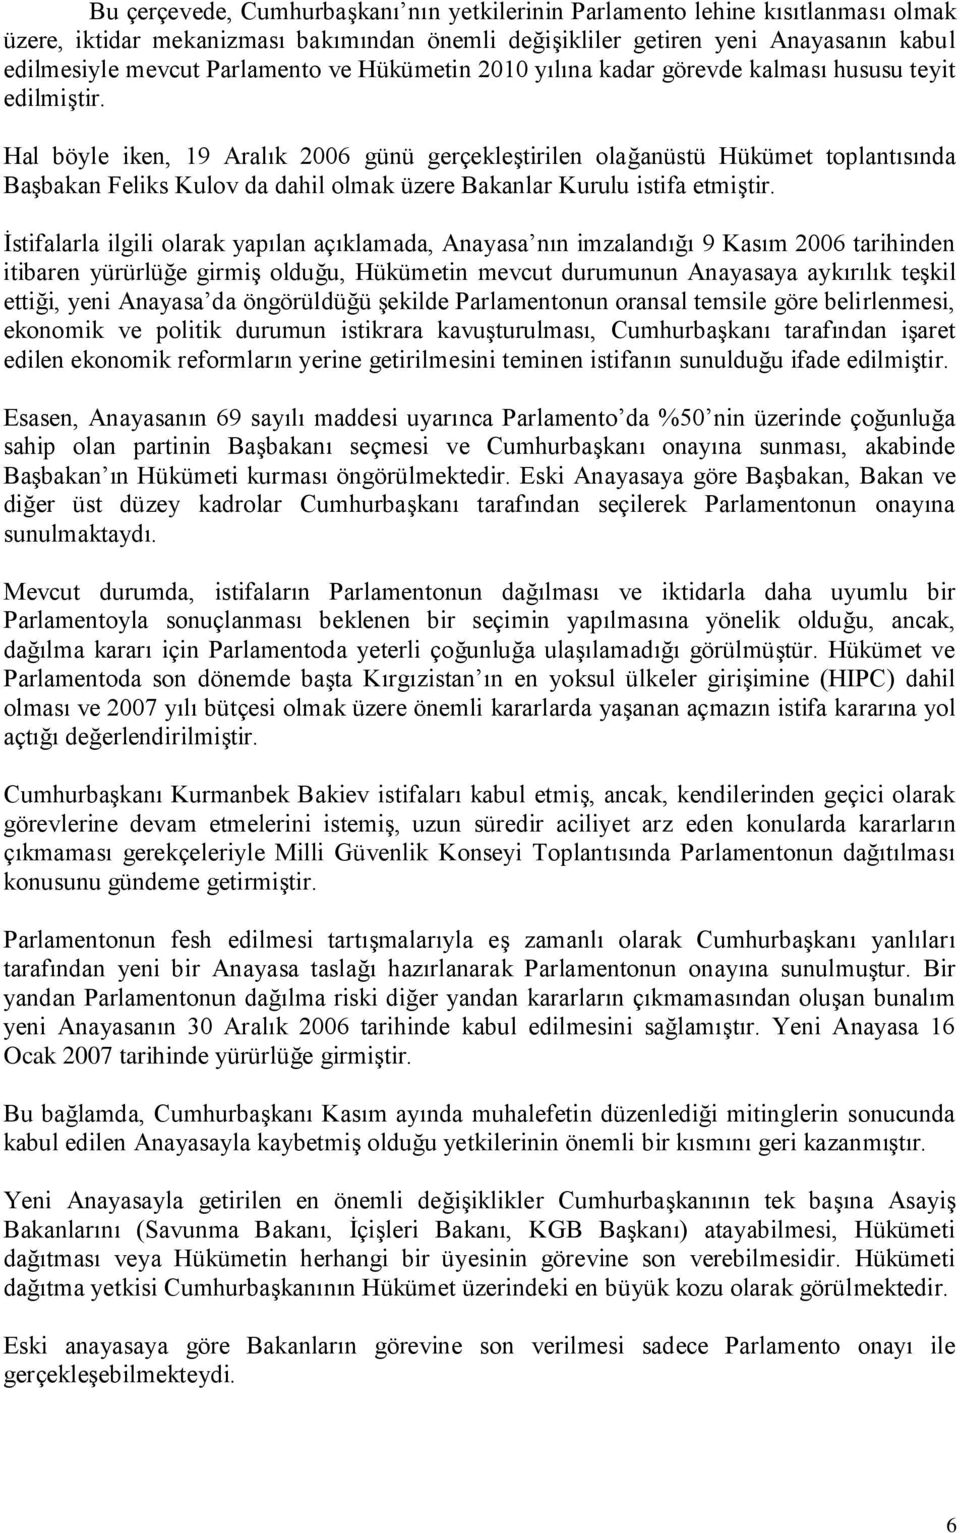 Hal böyle iken, 19 Aralık 2006 günü gerçekleģtirilen olağanüstü Hükümet toplantısında BaĢbakan Feliks Kulov da dahil olmak üzere Bakanlar Kurulu istifa etmiģtir.